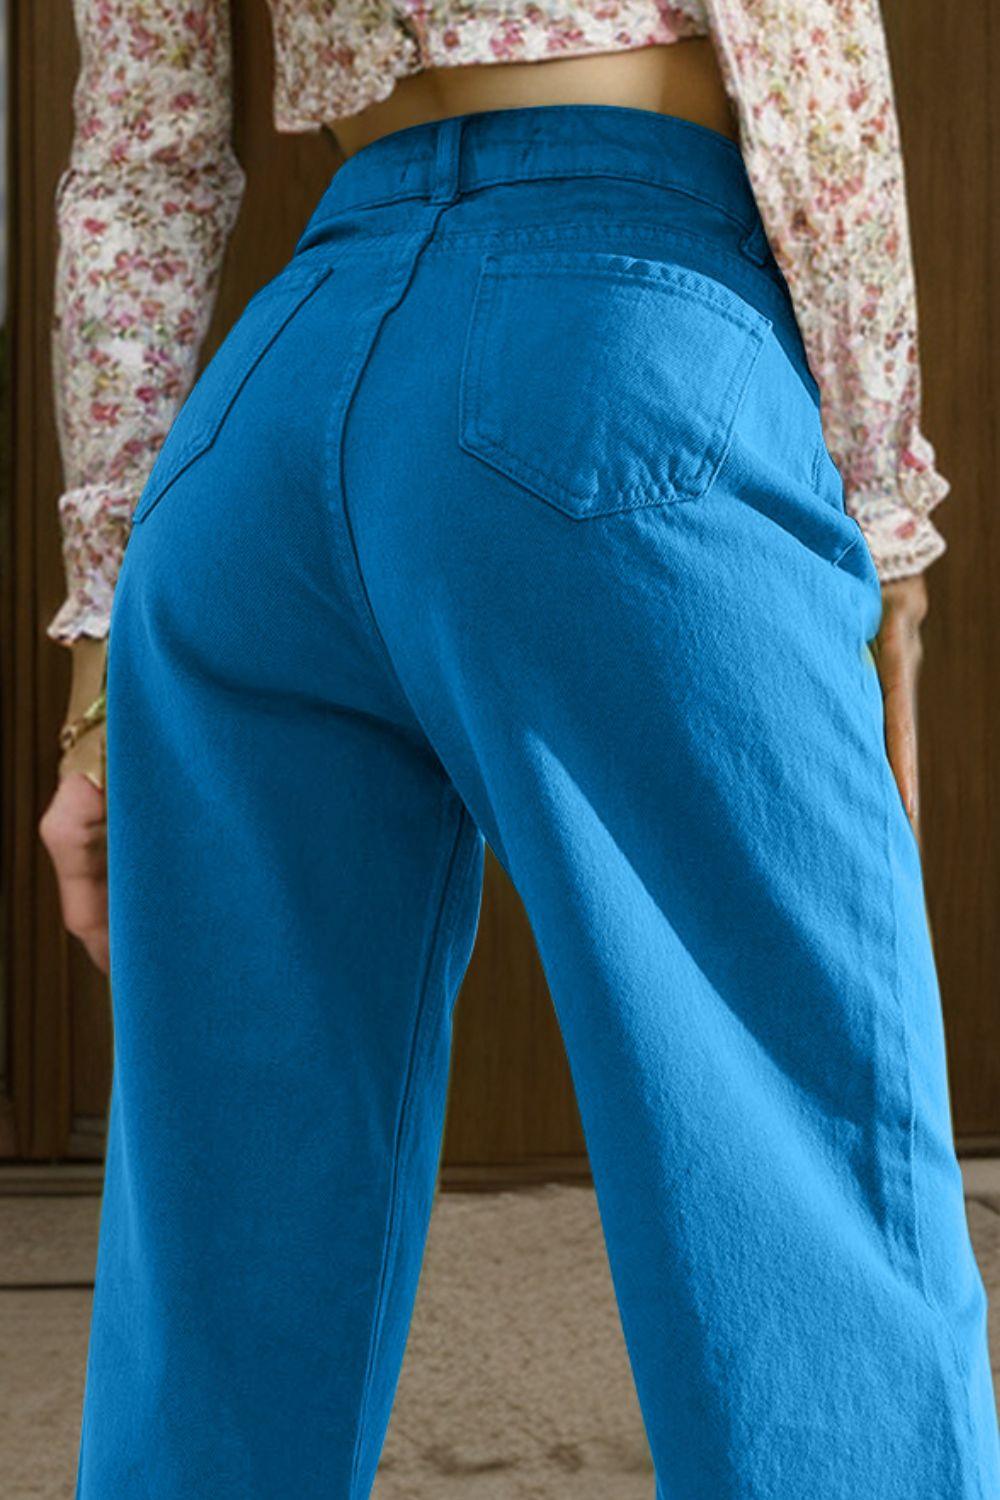 Bona Fide Fashion - Wide Leg Jeans with Pockets - Women Fashion - Bona Fide Fashion